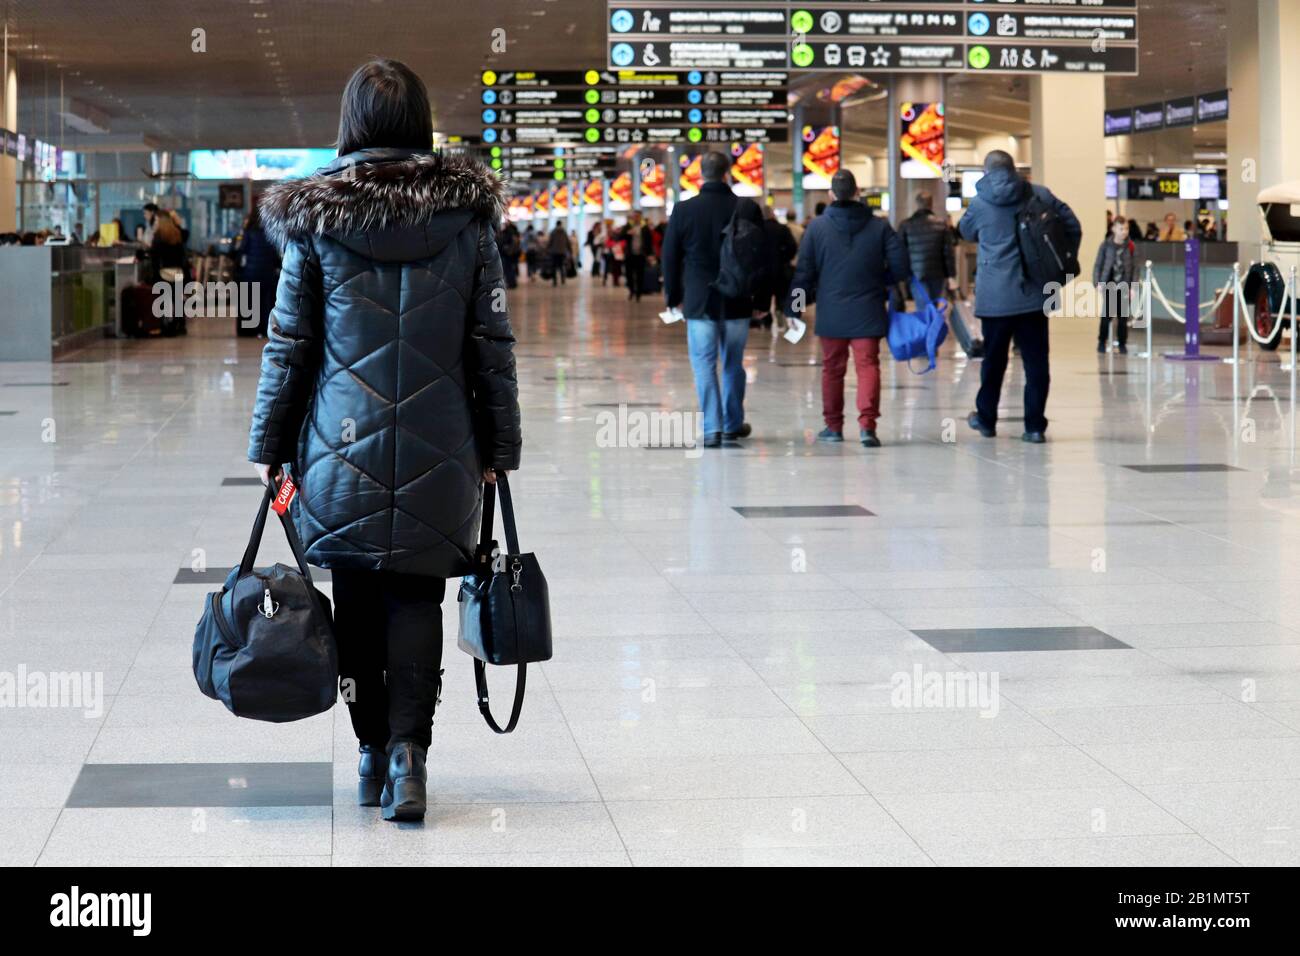 Femme avec des bagages à main marchant à l'intérieur du bâtiment de l'aéroport sur l'arrière-plan des passagers. Concept de voyageur avant de flotter Banque D'Images